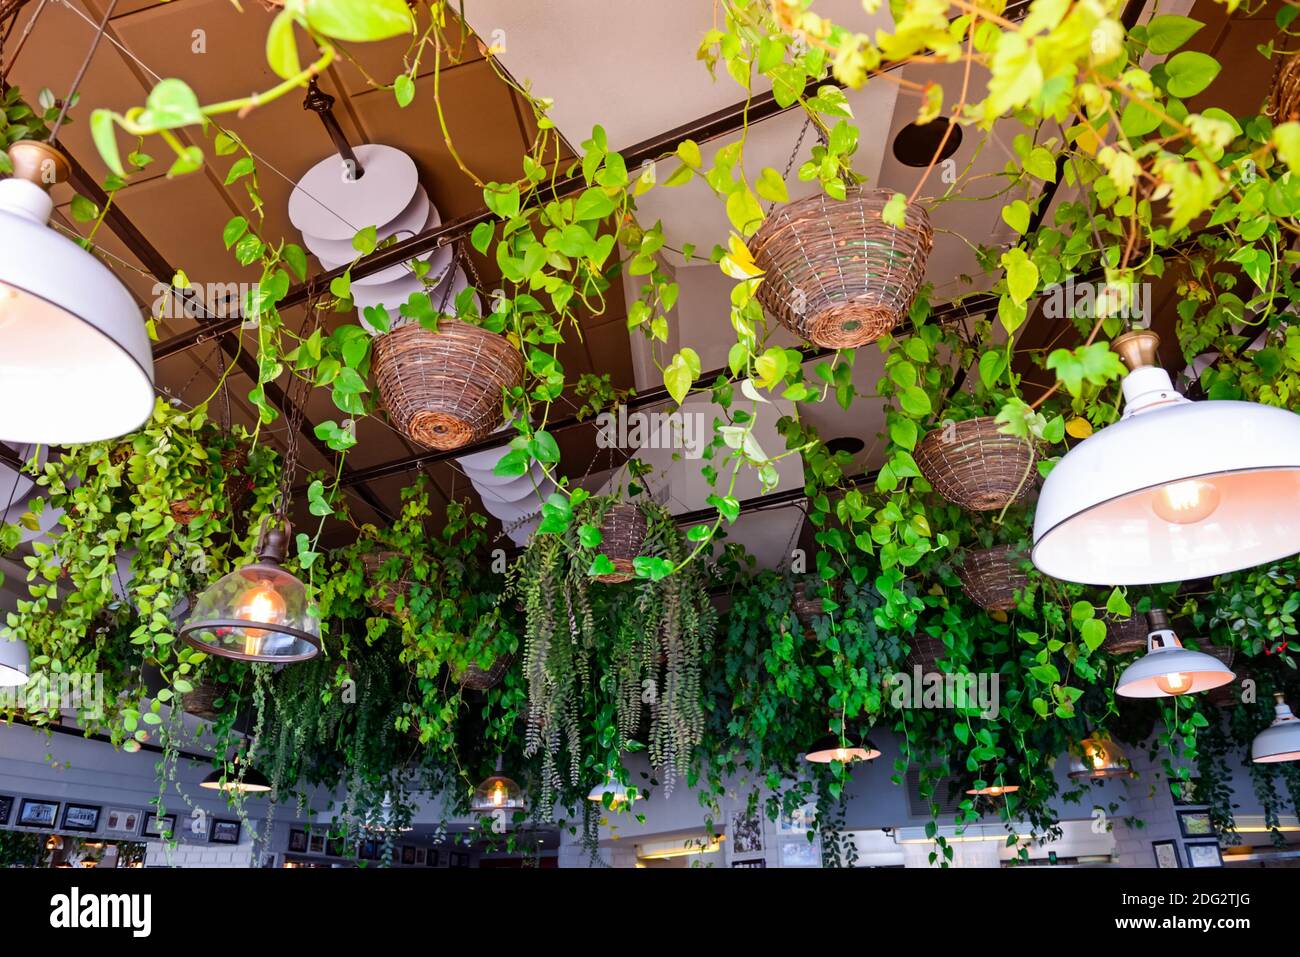 Accent sélectif sur les plantes grimpantes à feuilles persistantes dans les  paniers suspendus et lampes fixées au plafond avec intérieur flou du  restaurant l'arrière-plan Photo Stock - Alamy